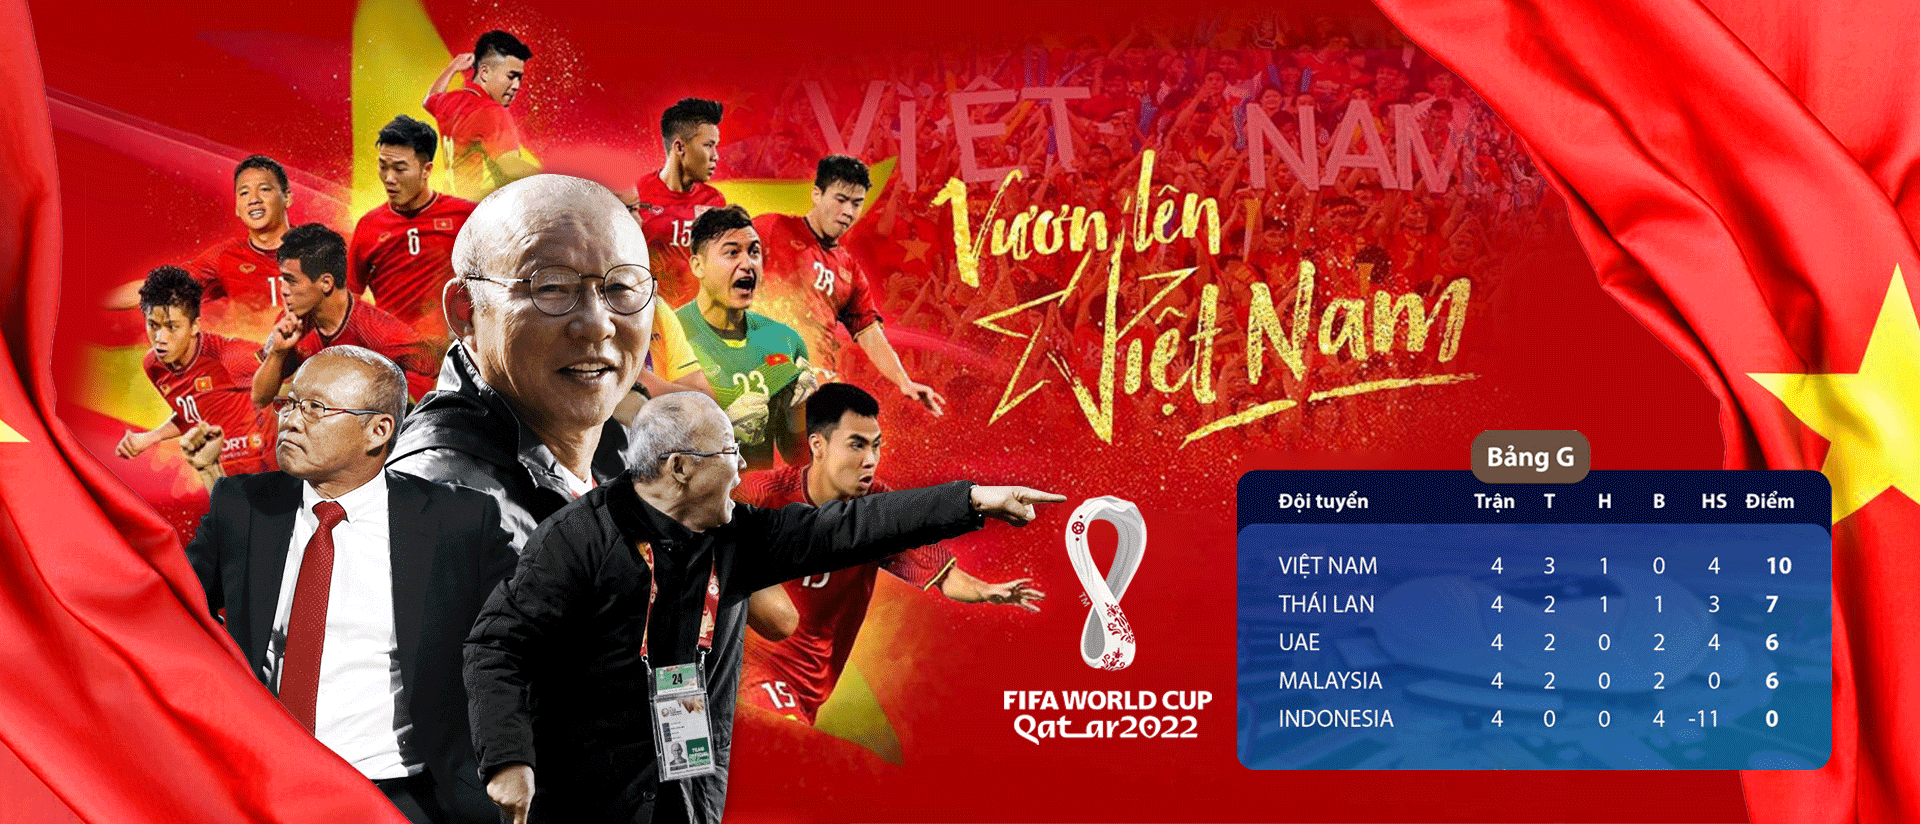 Review về Bóng đá 24h - Website soi kèo bóng đá số 1 Việt Nam